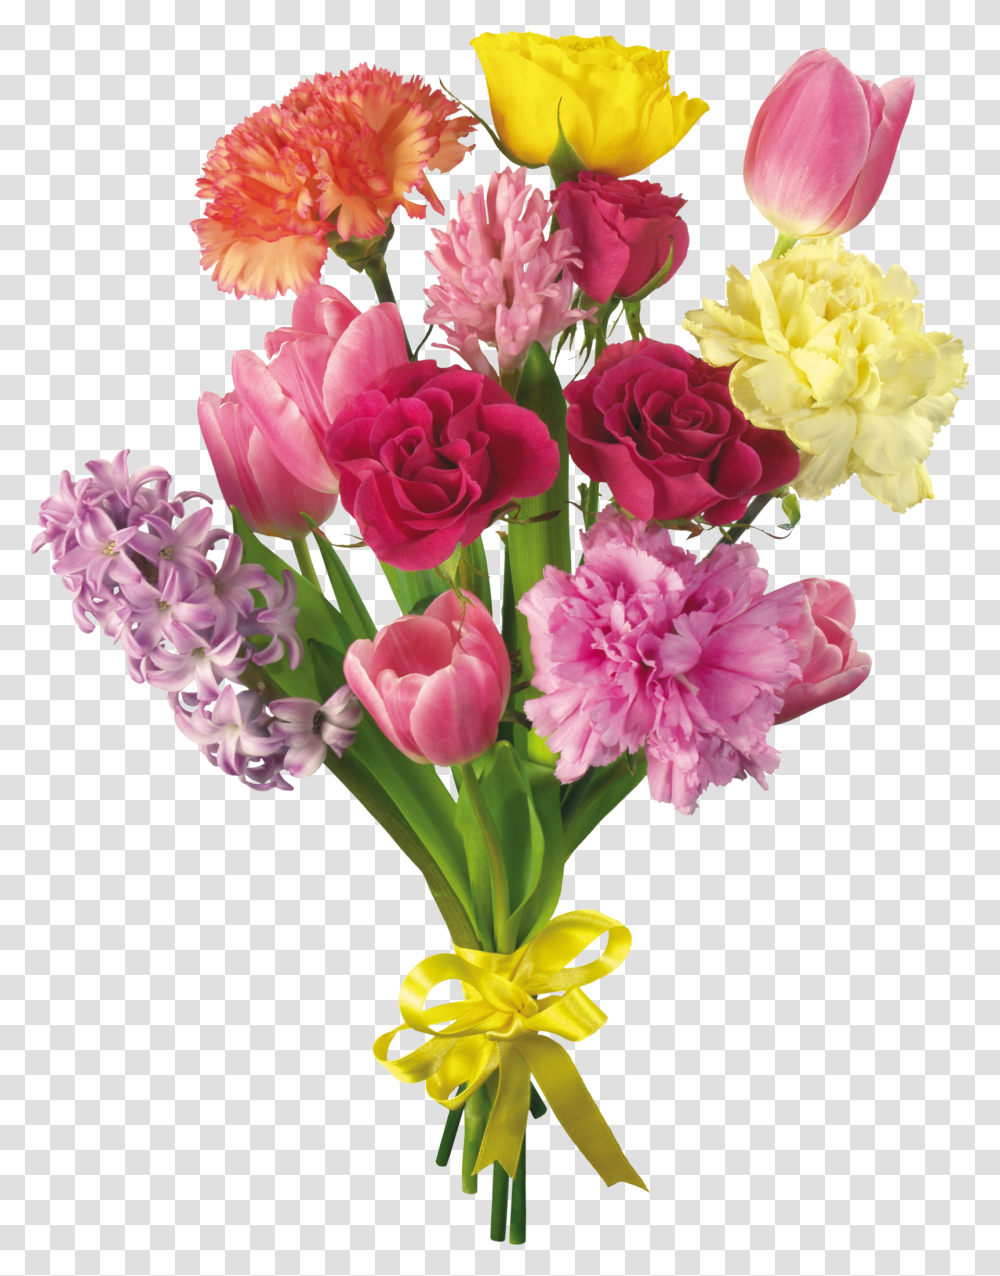 Flower Bouquet Desktop Wallpaper Carnation Tulip, Plant, Blossom, Flower Arrangement, Petal Transparent Png